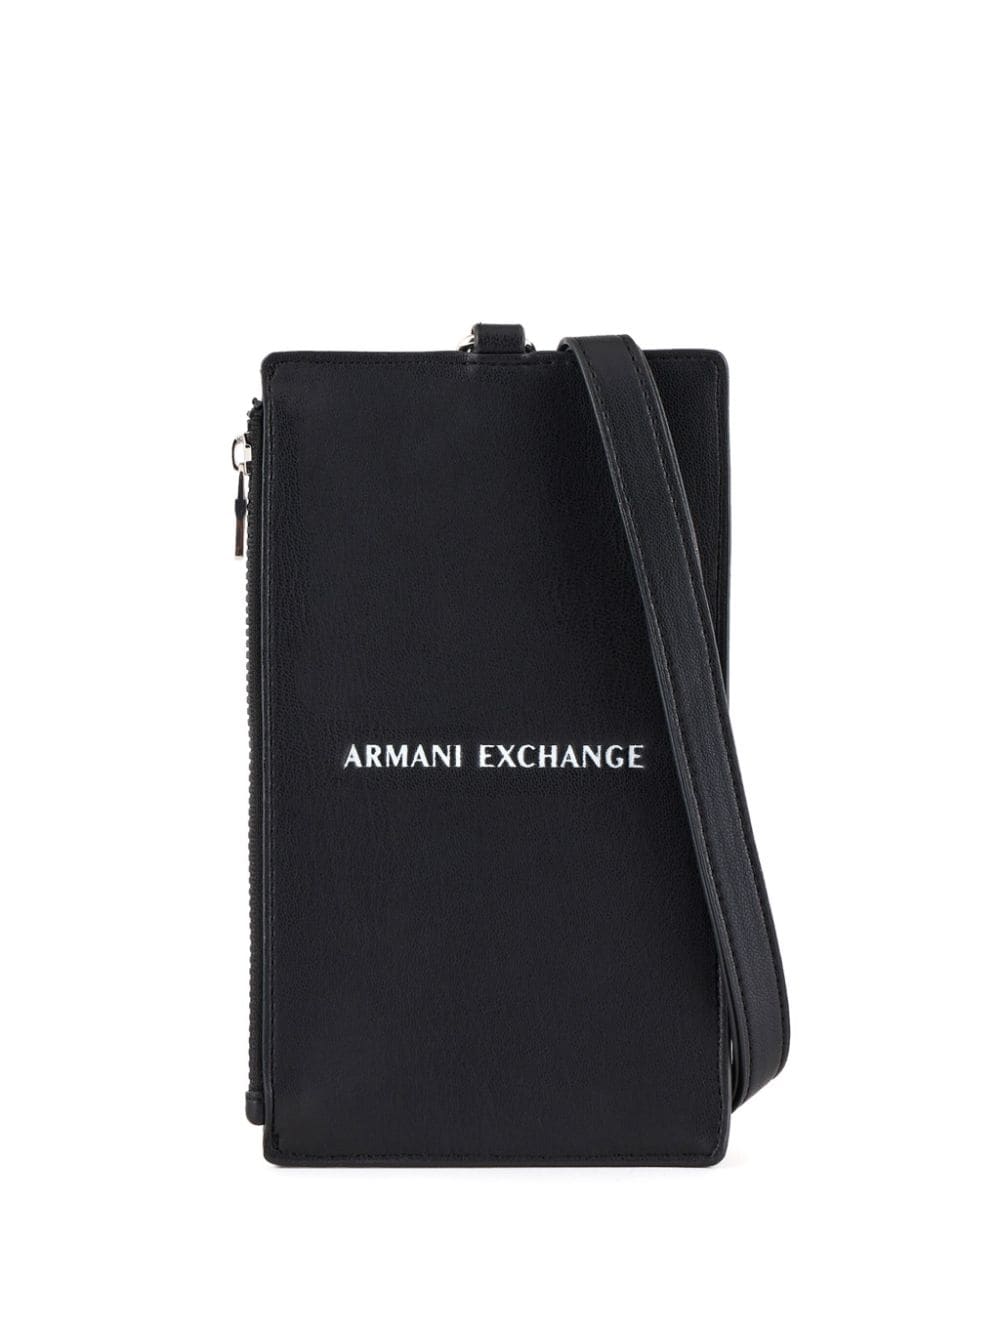 Armani Exchange logo-stamp phone pouch - Black von Armani Exchange